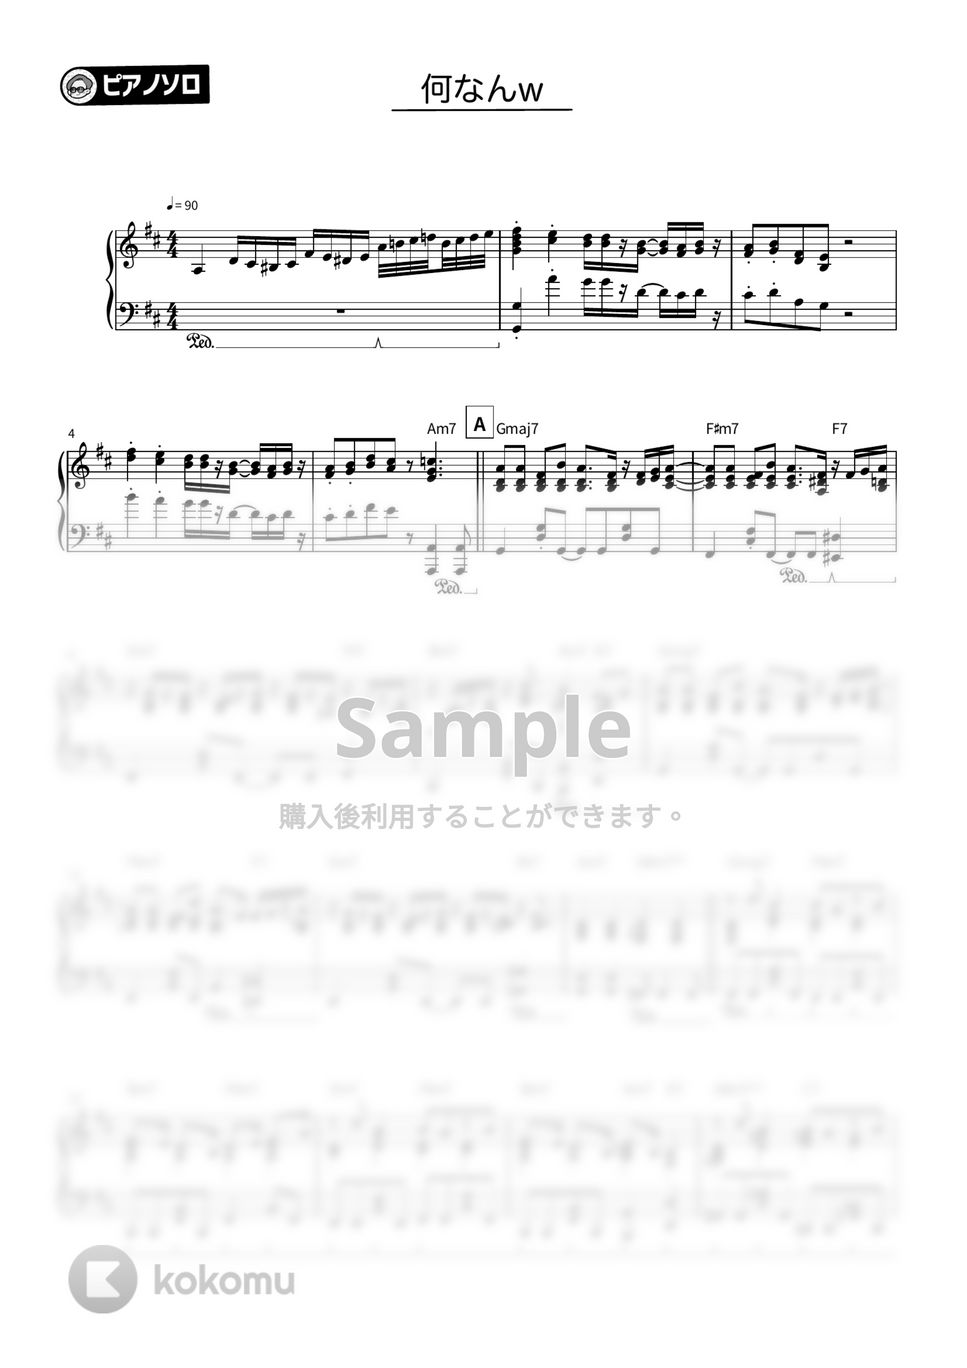 藤井風 - 何なんw by シータピアノ